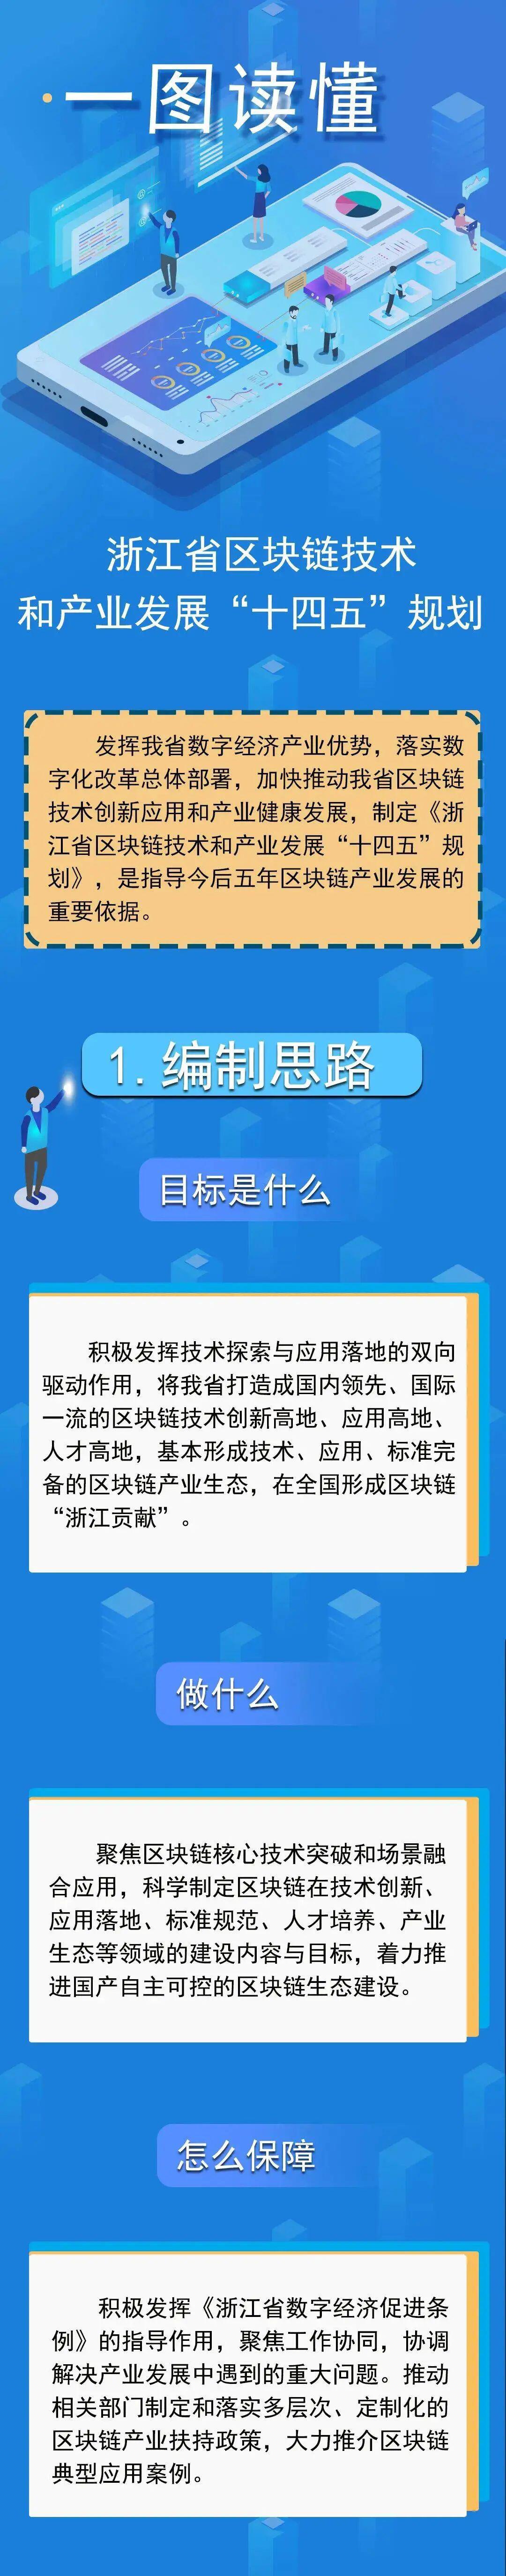 浙江省区块链技术和产业发展“十四五”规划